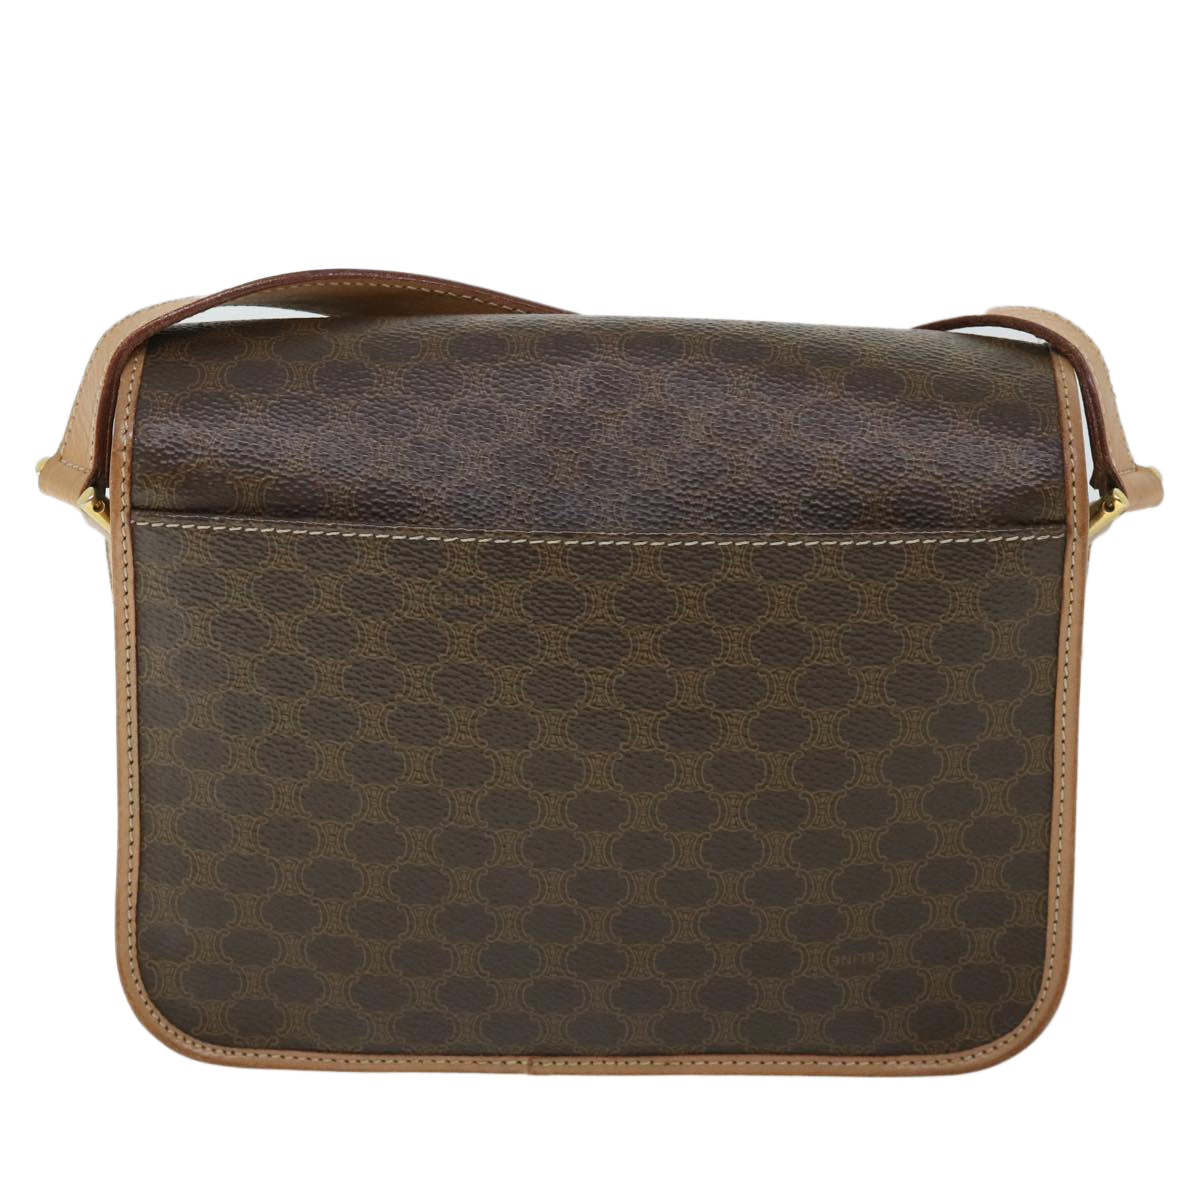 CELINE Macadam Canvas Shoulder Bag PVC Leather Brown Auth 54959 - 0